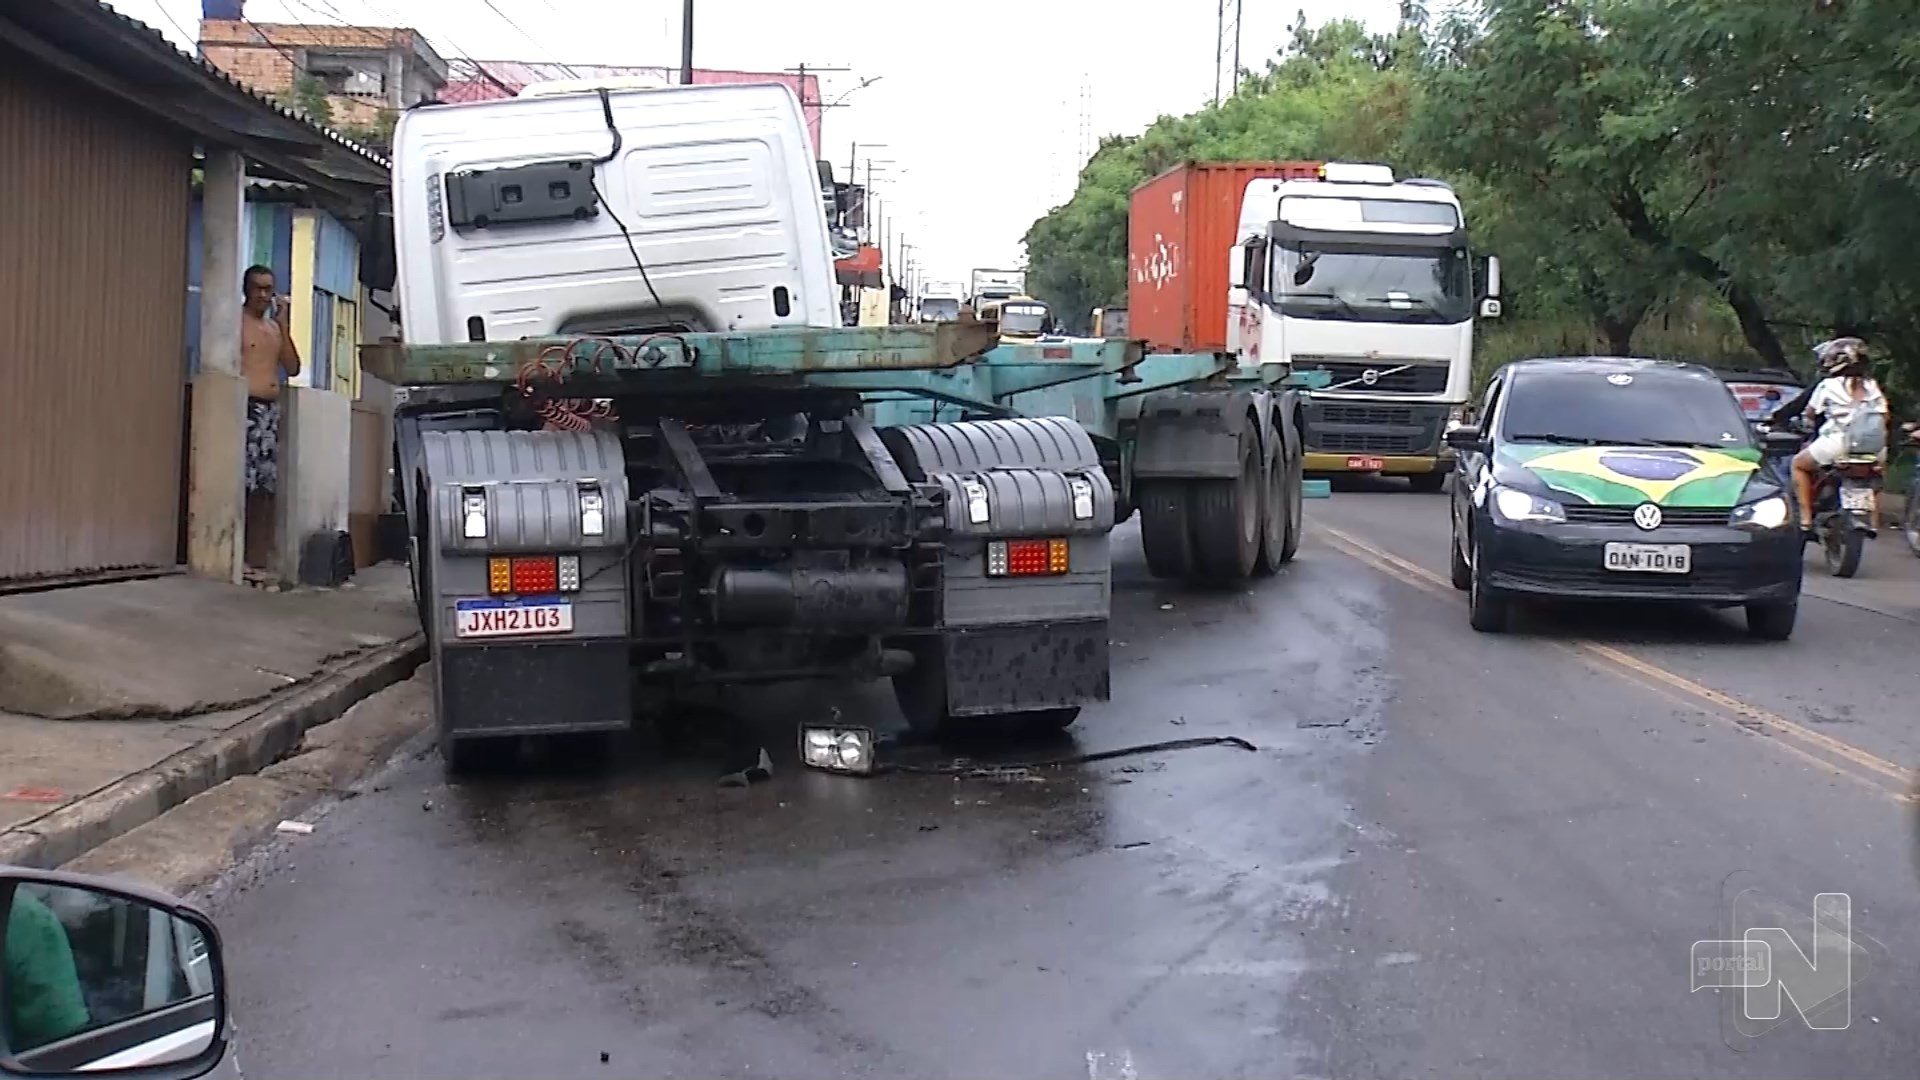 Motorista é arremessado para fora de veículo após acidente em Manaus - Foto: Reprodução/TV Norte Amazonas